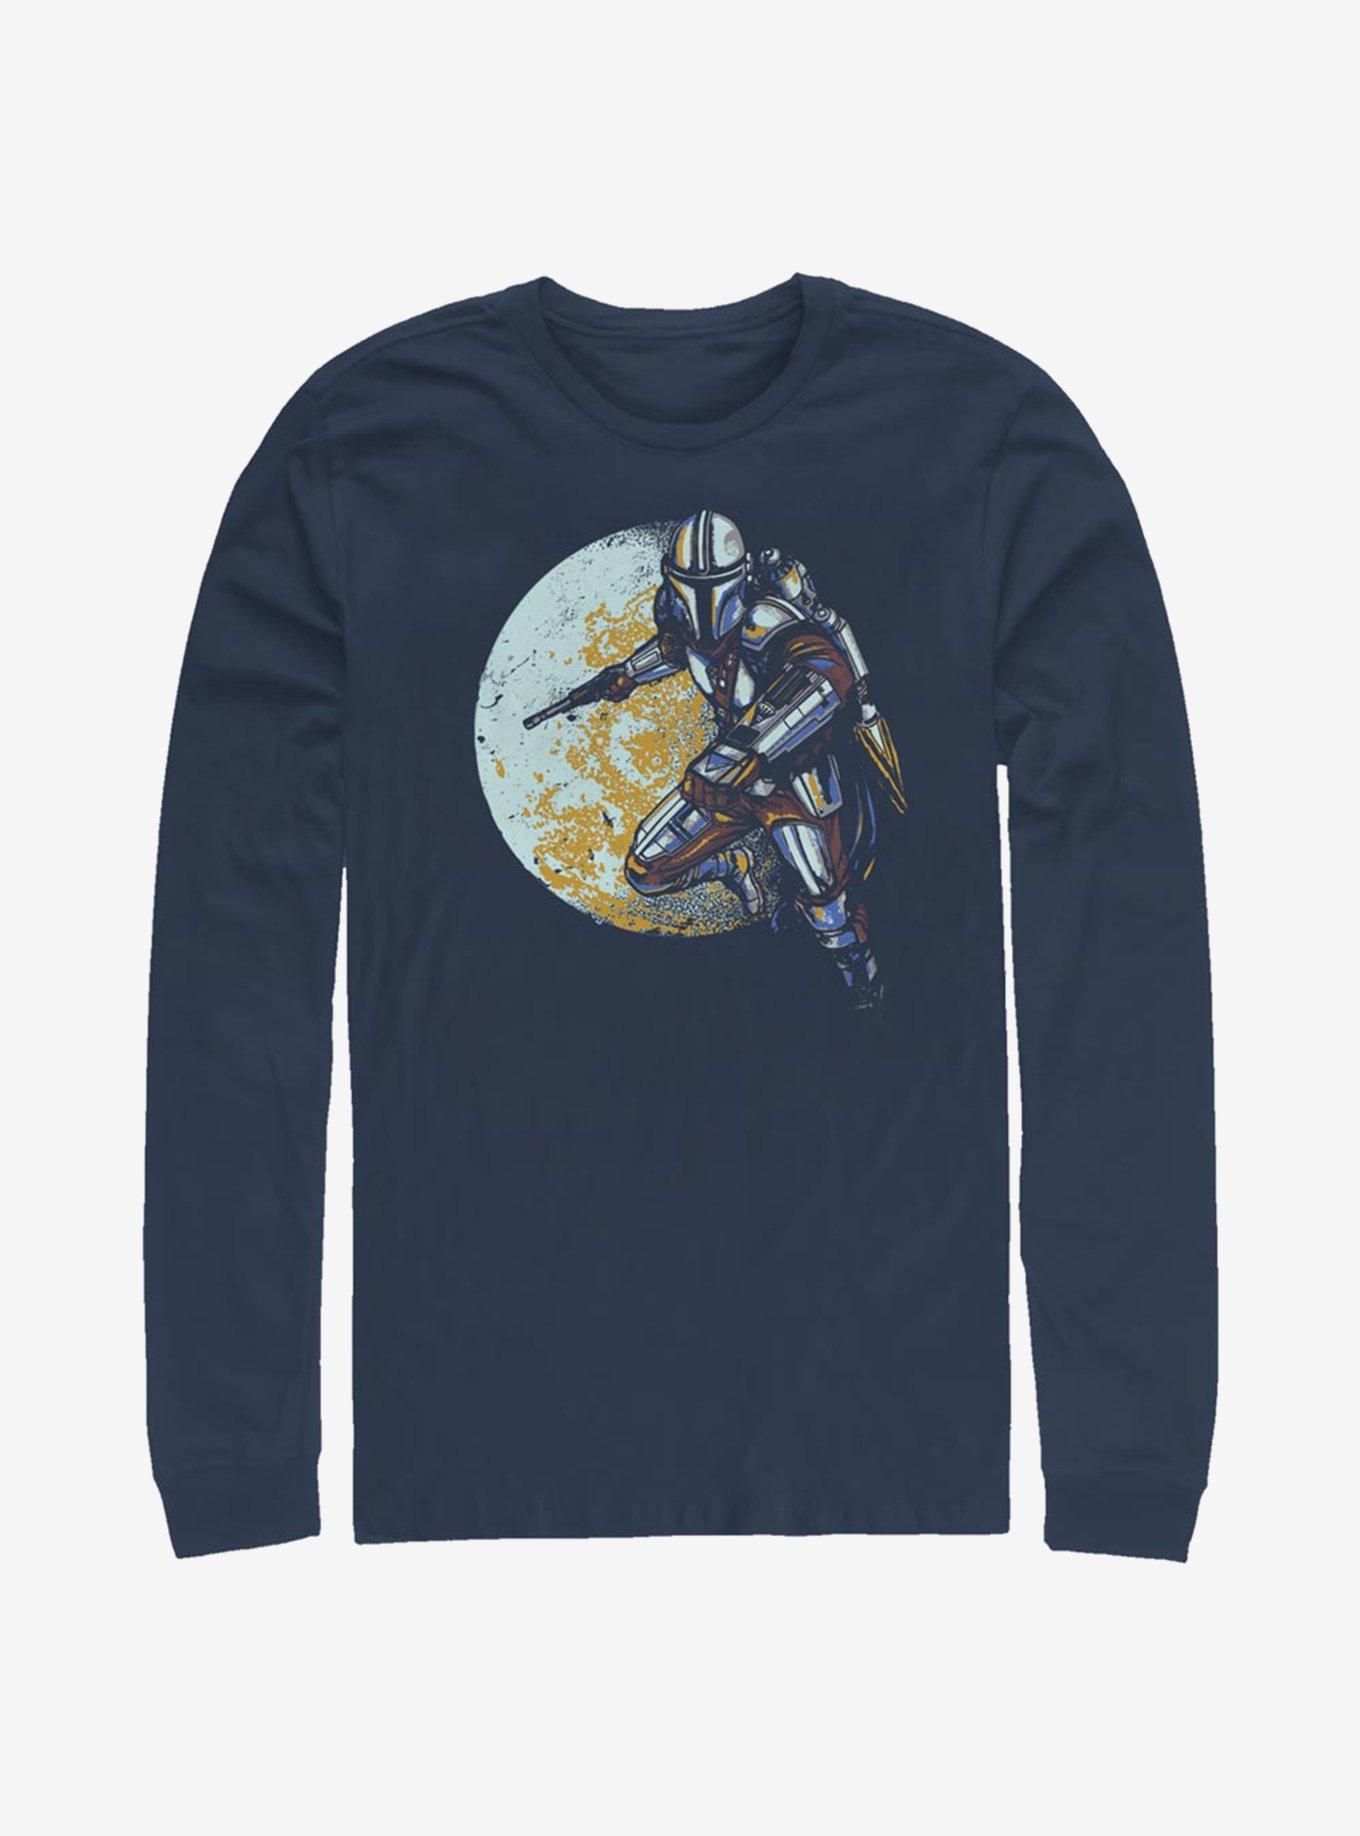 Star Wars The Mandalorian Moondo Lorian Long-Sleeve T-Shirt, NAVY, hi-res